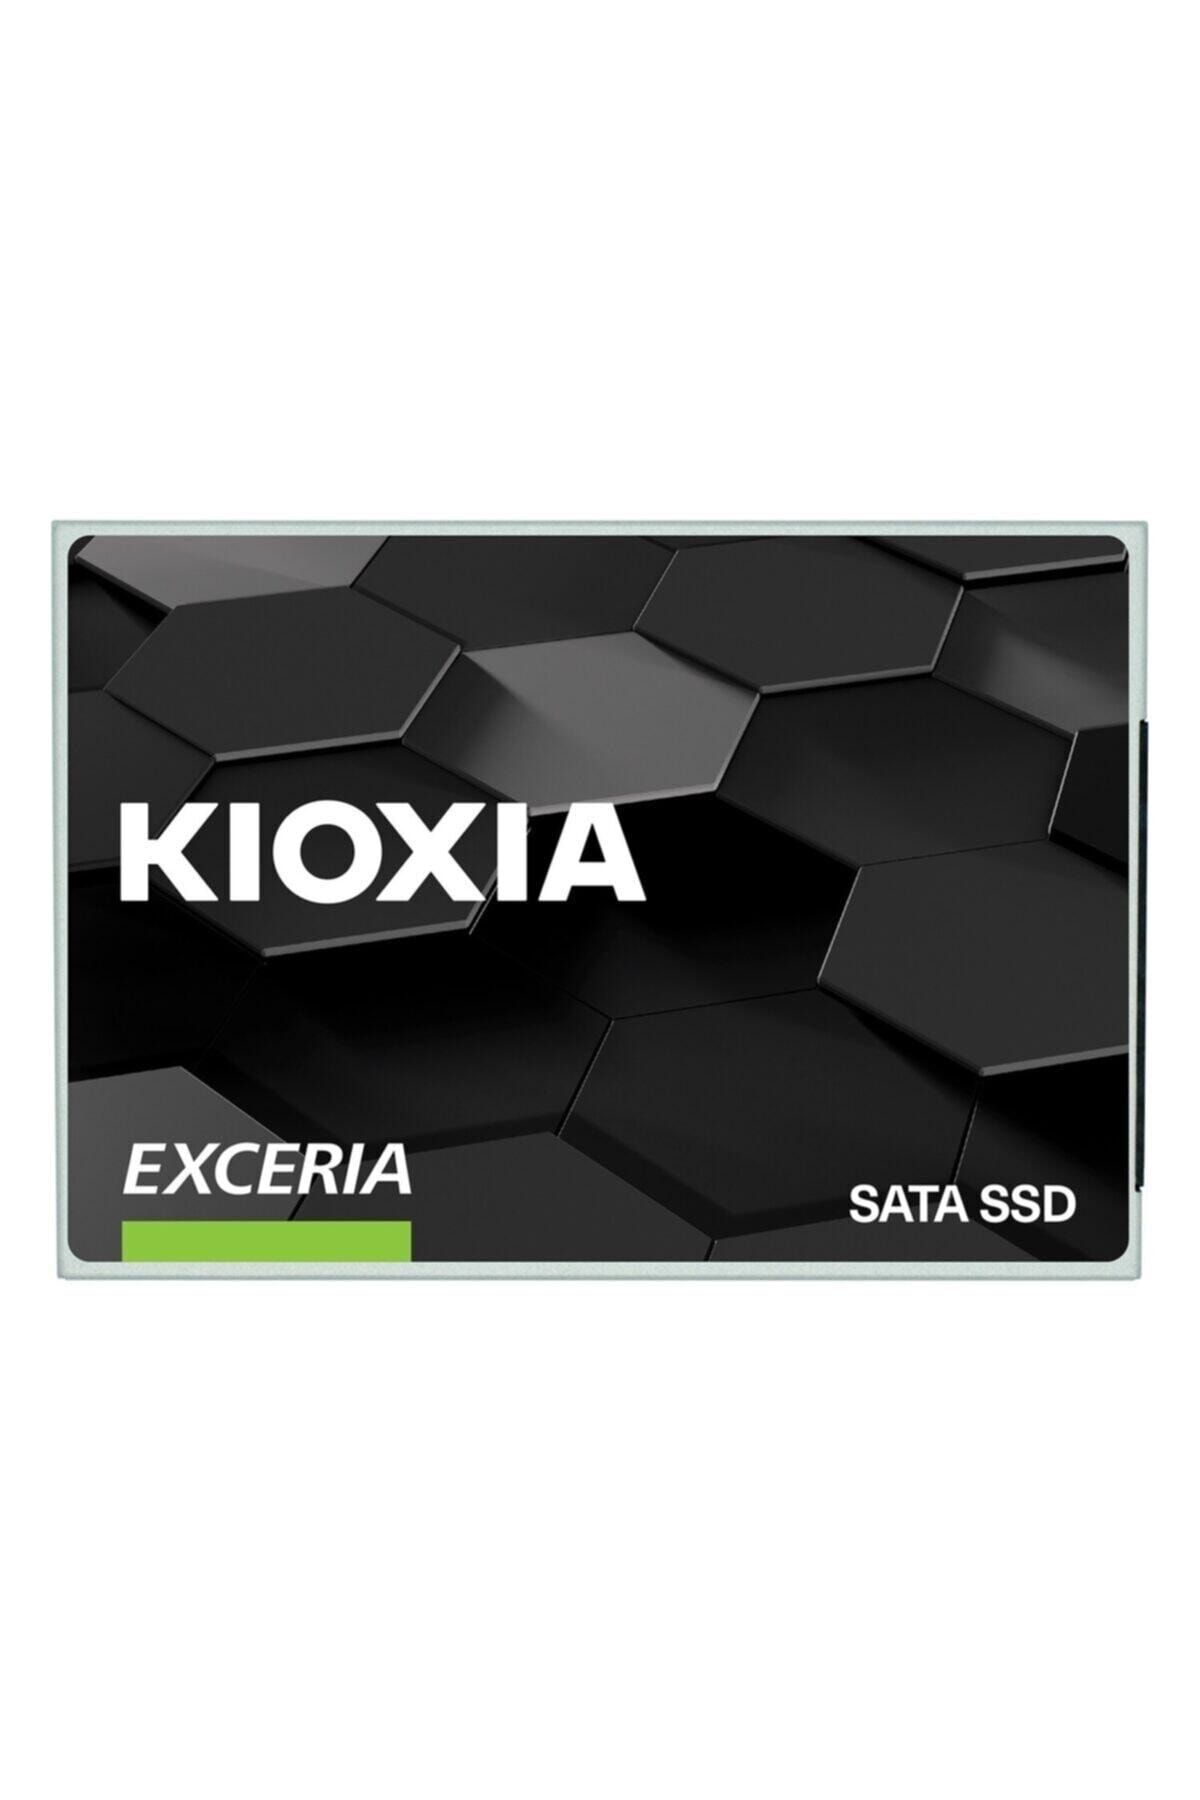 Kioxia Kıoxıa Exceria 240gb Ssd Disk Ltc10z240gg8 555/540mb/s 2.5\